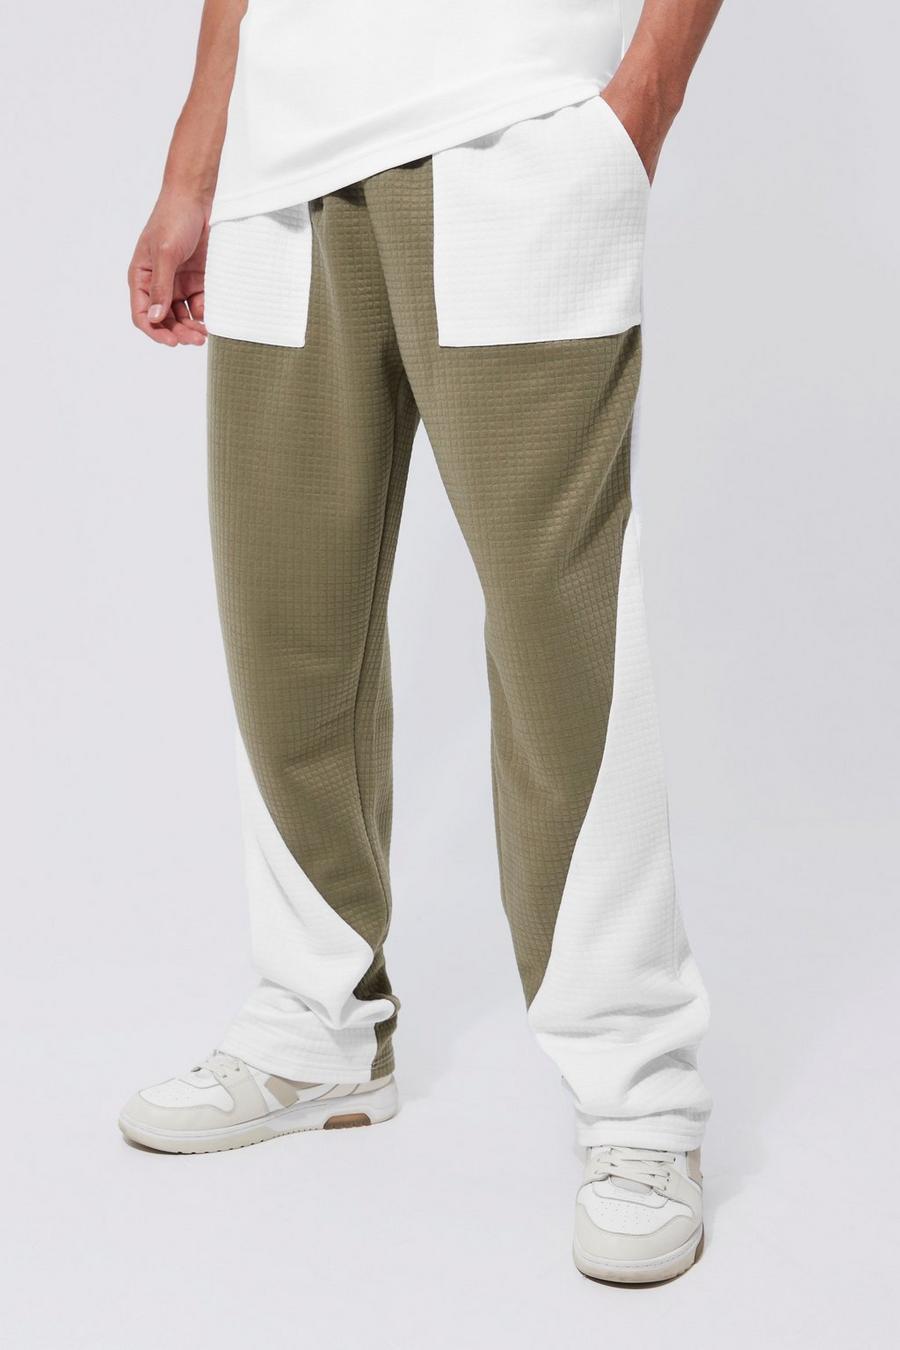 Pantalón deportivo Tall recto de tejido gofre con colores en bloque, Khaki caqui